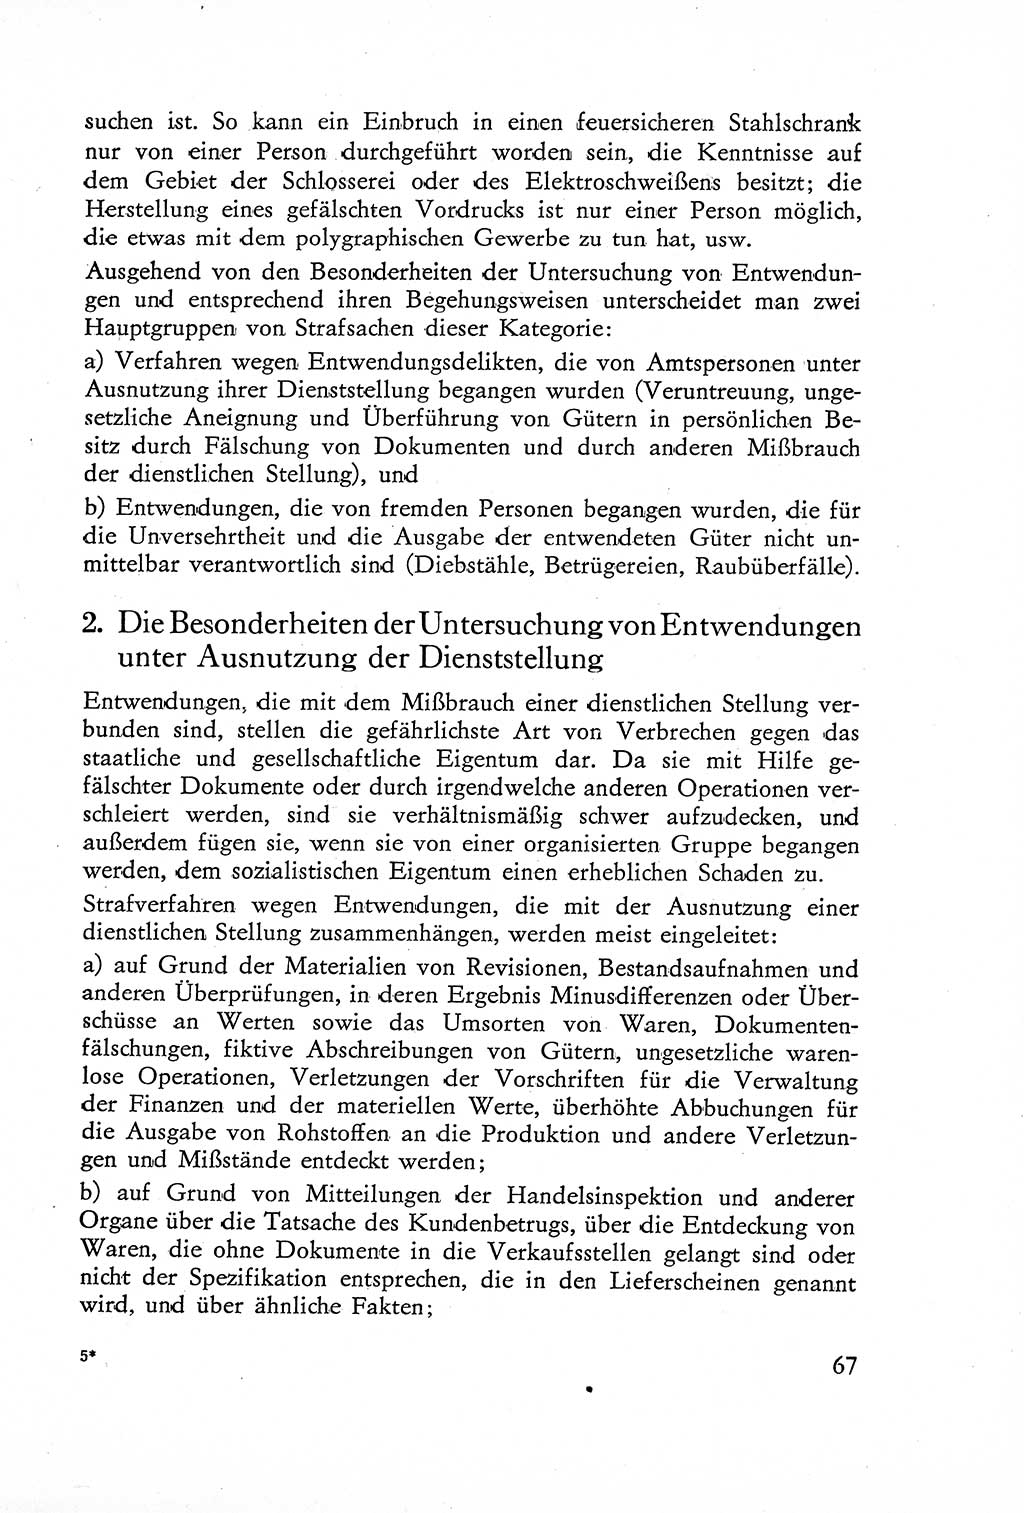 Die Untersuchung einzelner Verbrechensarten [Deutsche Demokratische Republik (DDR)] 1960, Seite 67 (Unters. Verbr.-Art. DDR 1960, S. 67)